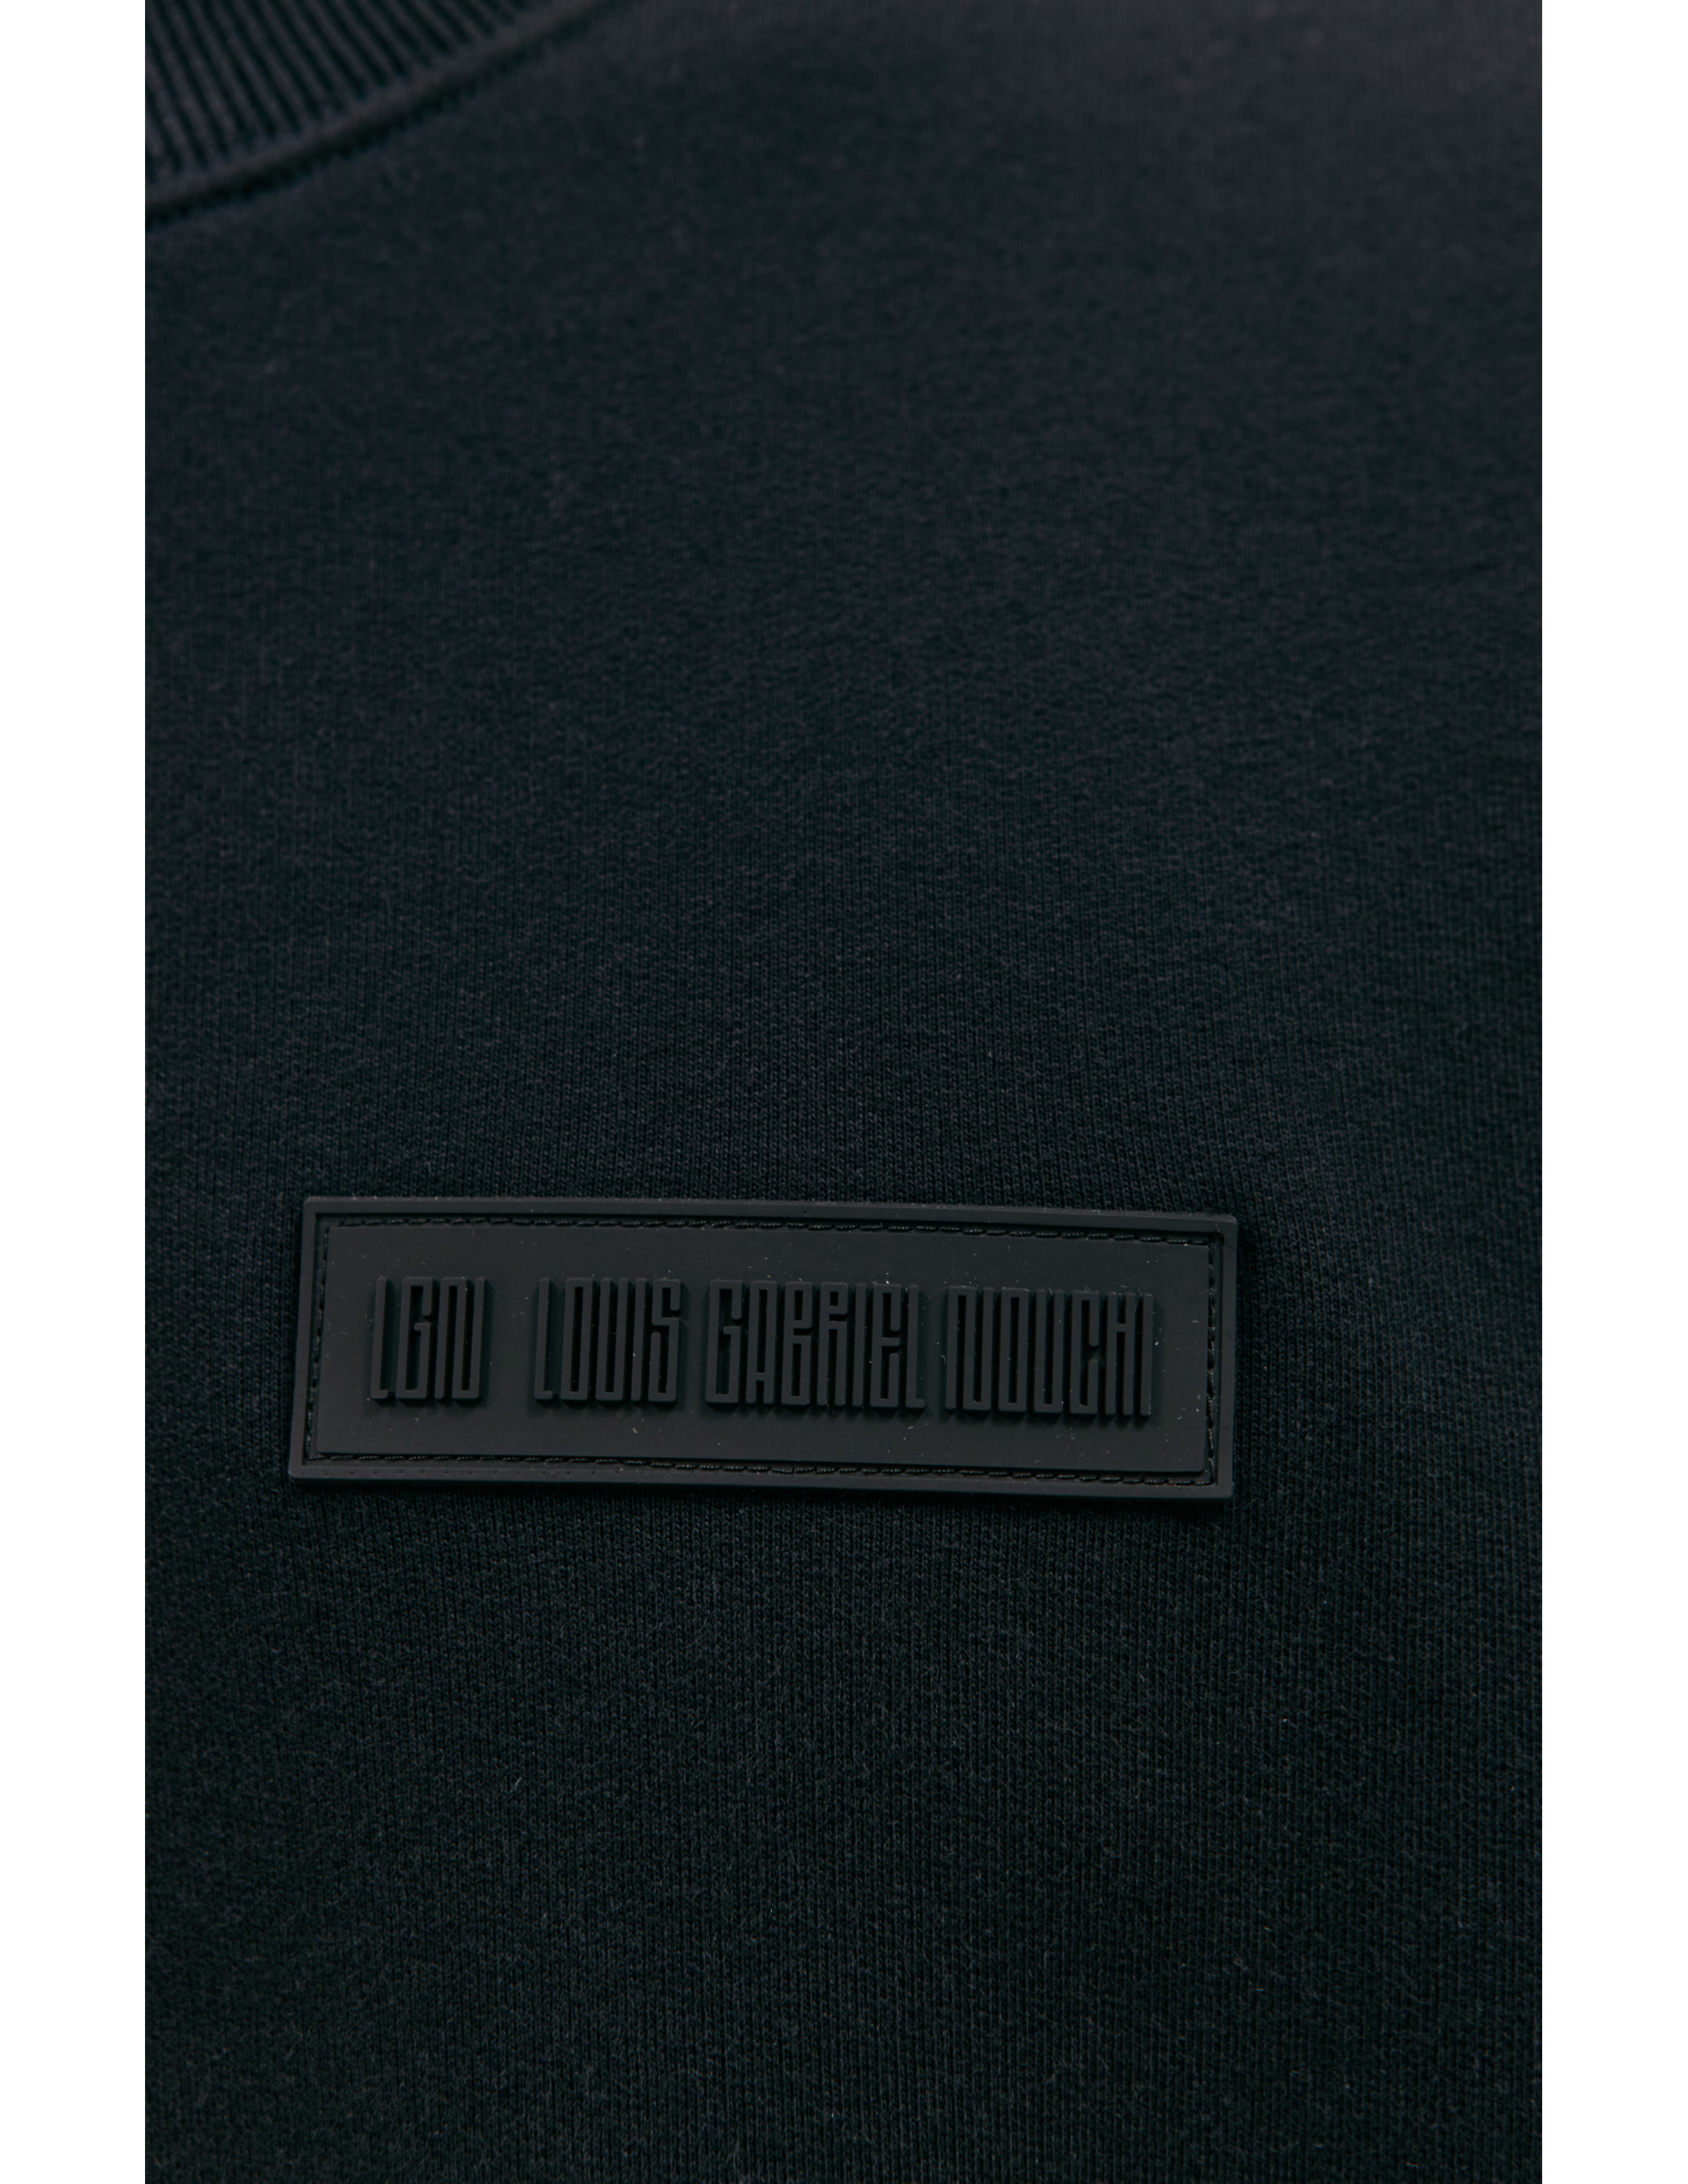 Черный свитшот с патчем LOUIS GABRIEL NOUCHI 0622/T330/001, размер M;XL 0622/T330/001 - фото 4